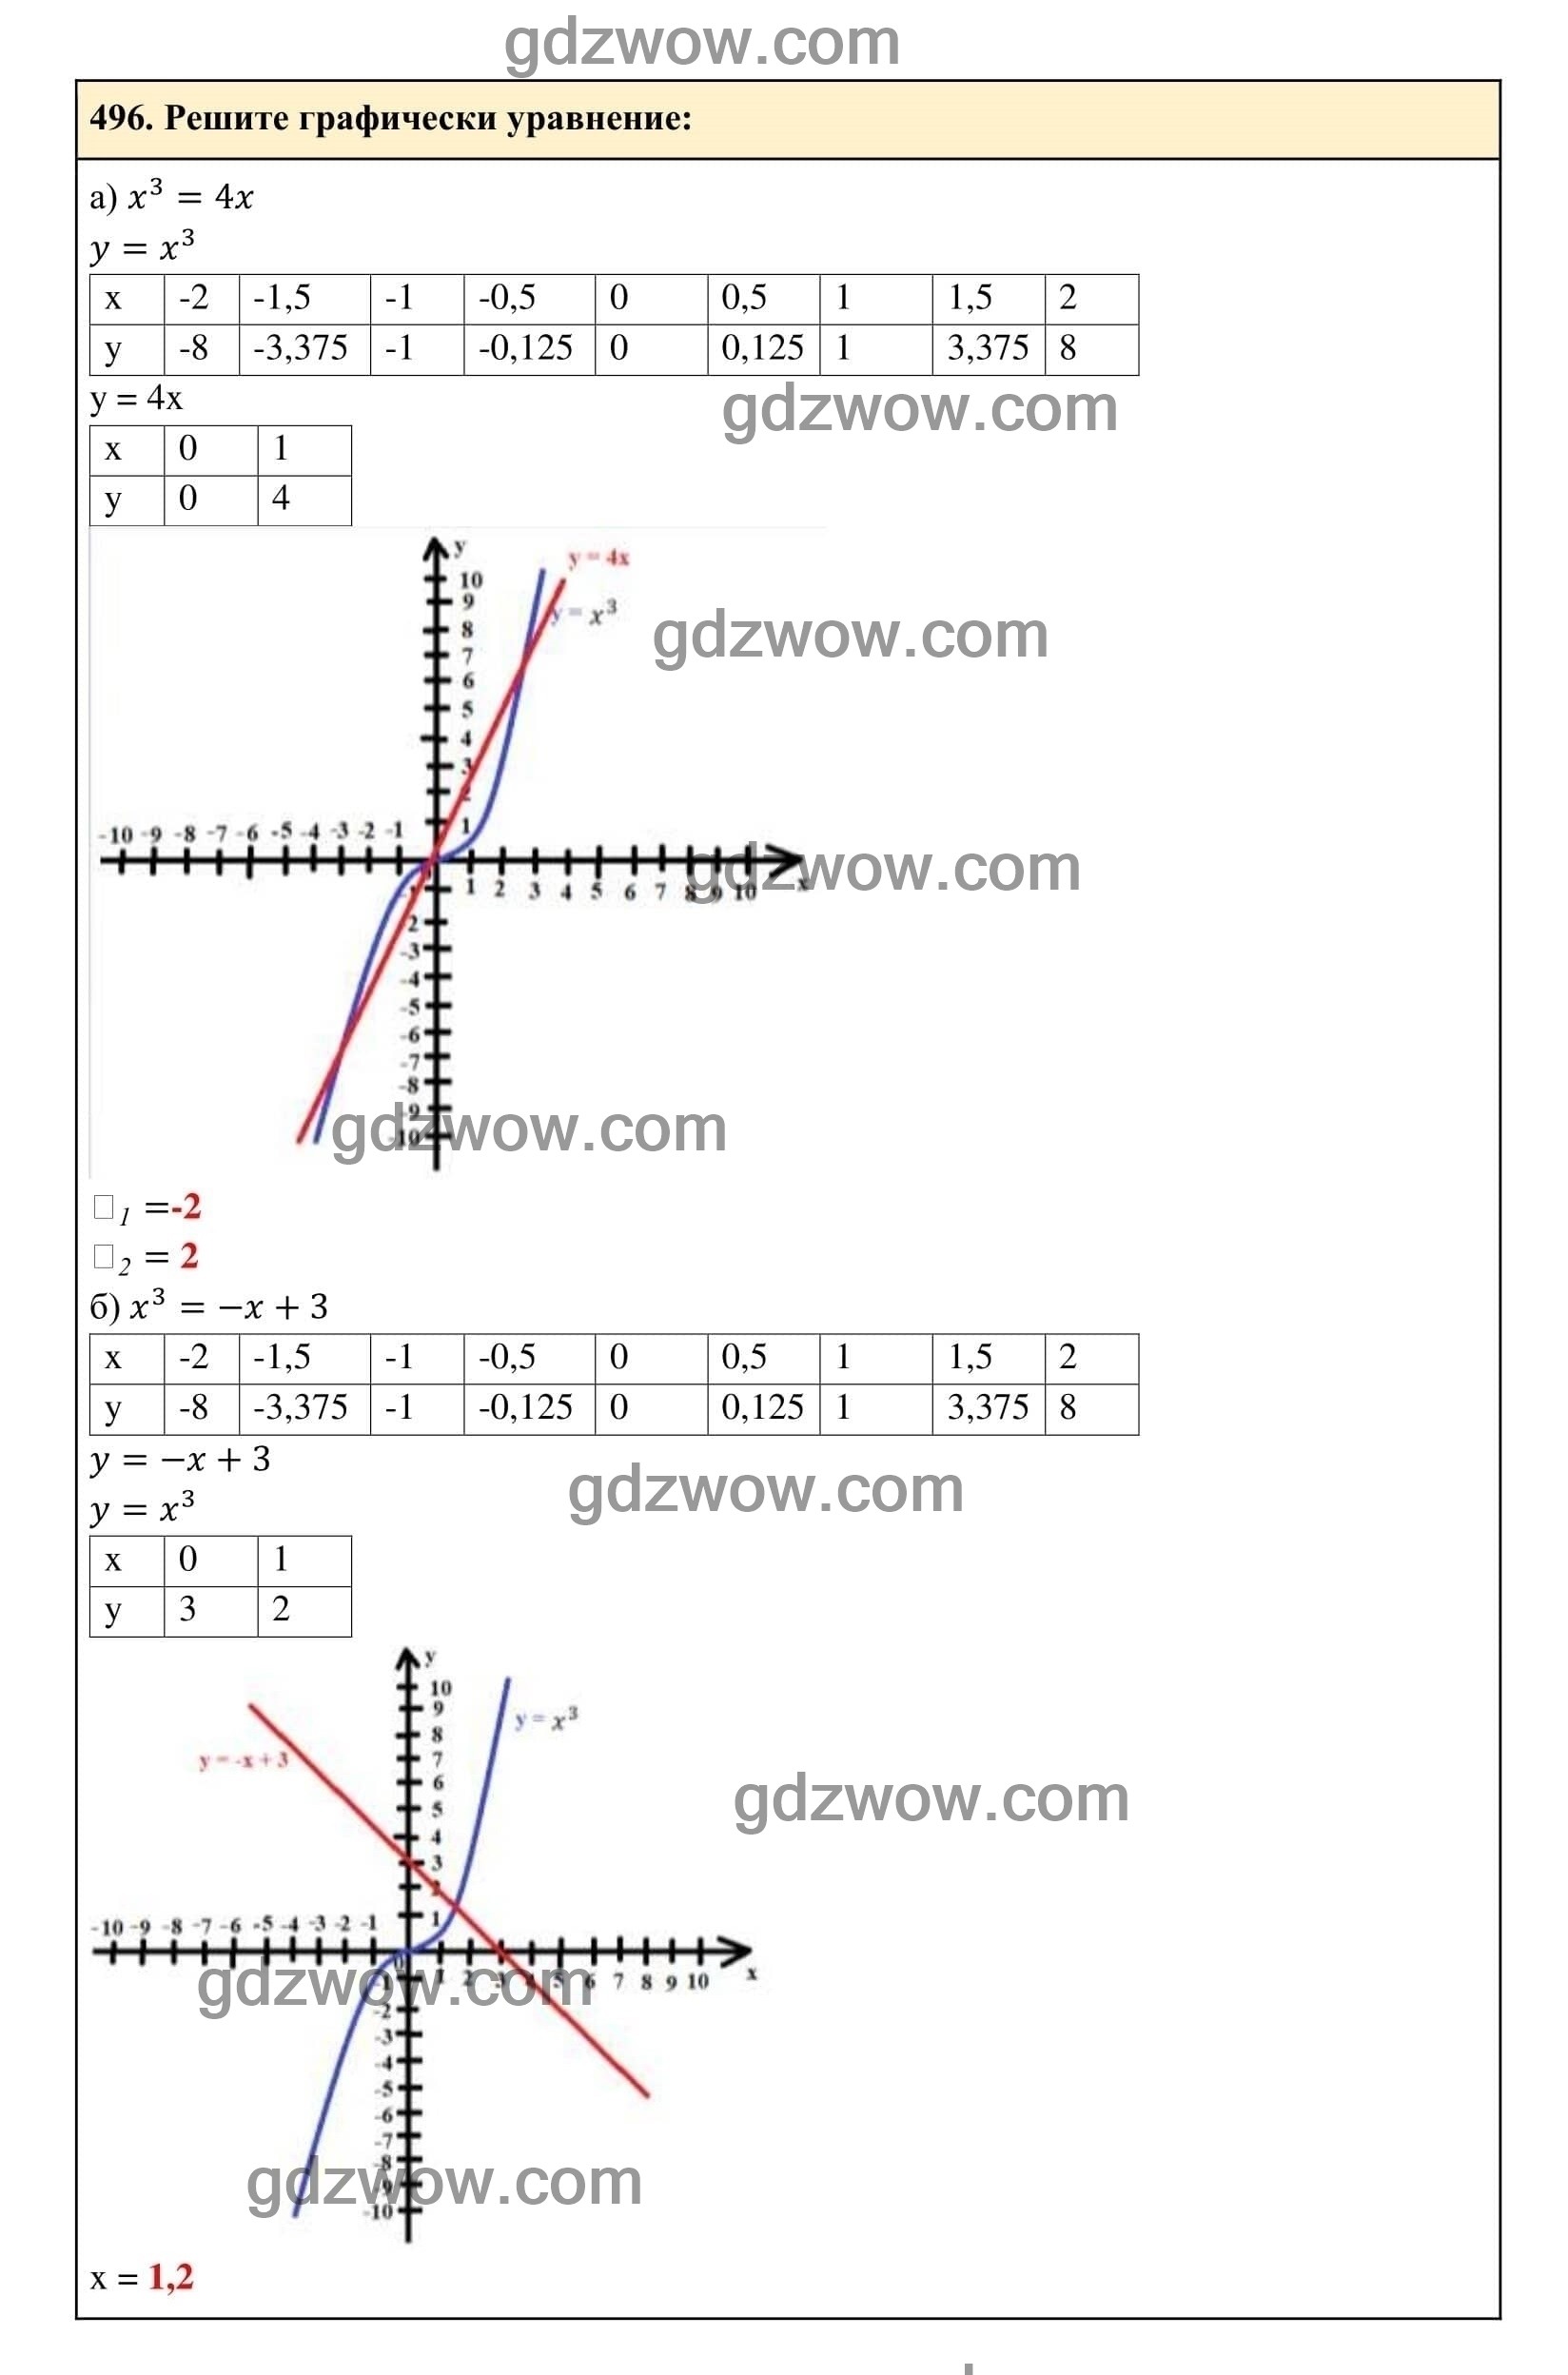 Упражнение 496 - ГДЗ по Алгебре 7 класс Учебник Макарычев (решебник) - GDZwow